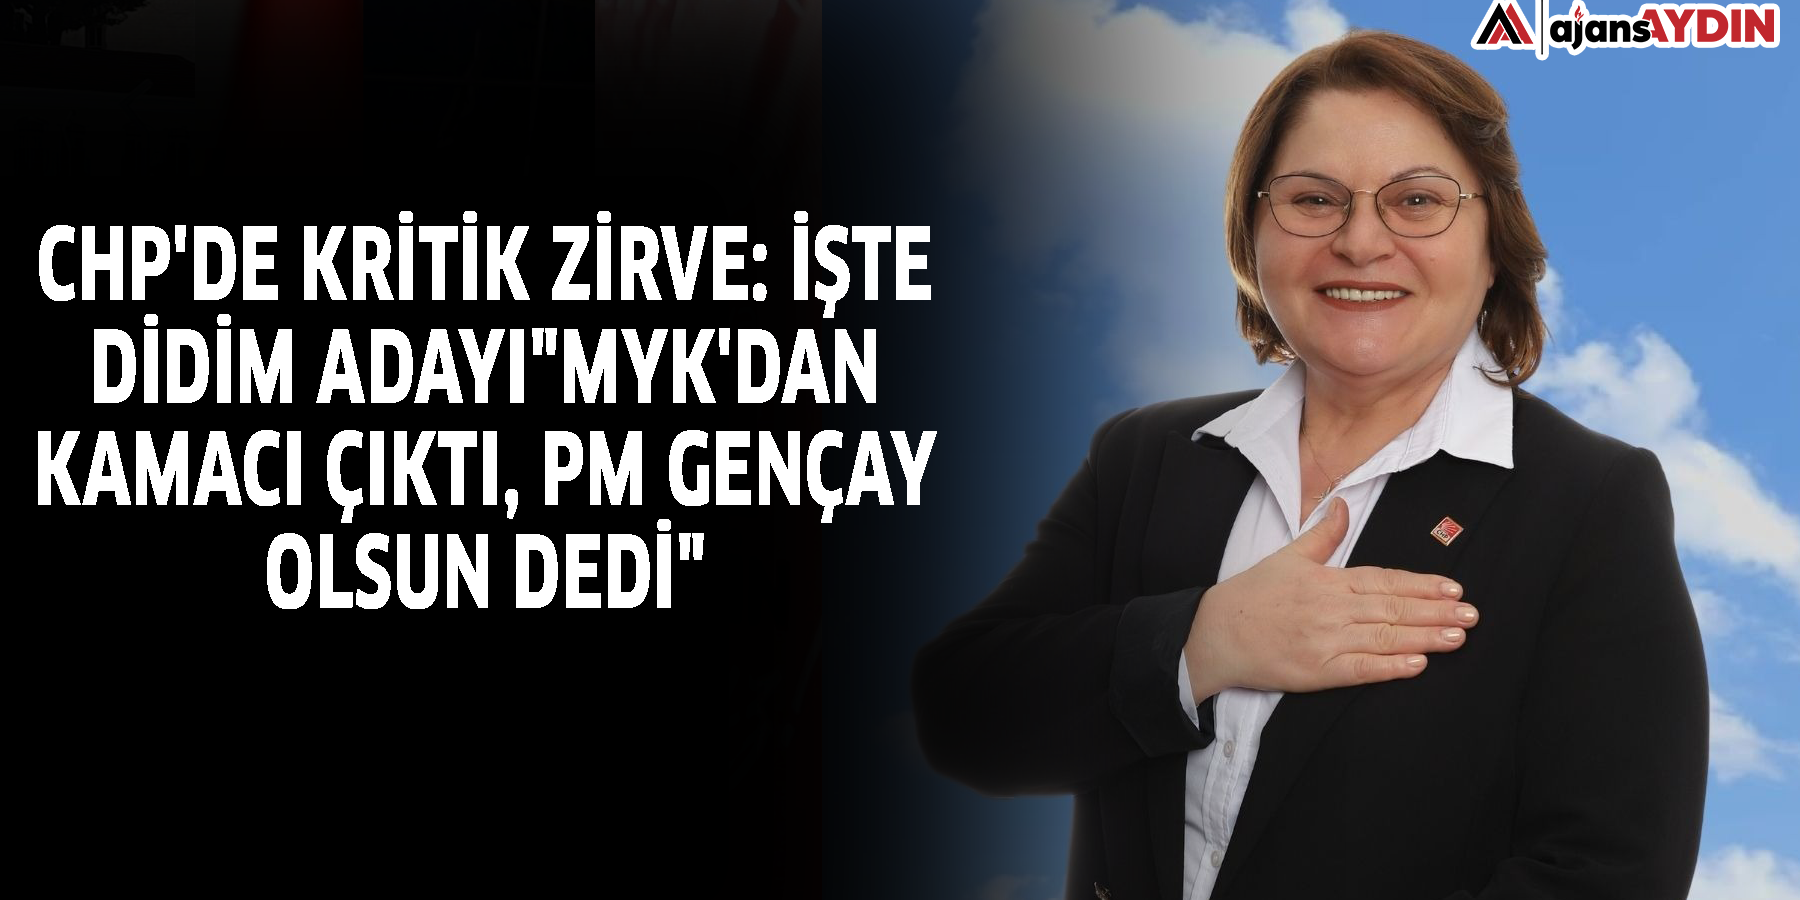 CHP'de kritik zirve: İşte Didim adayı"MYK'dan Kamacı çıktı, PM Gençay olsun dedi"